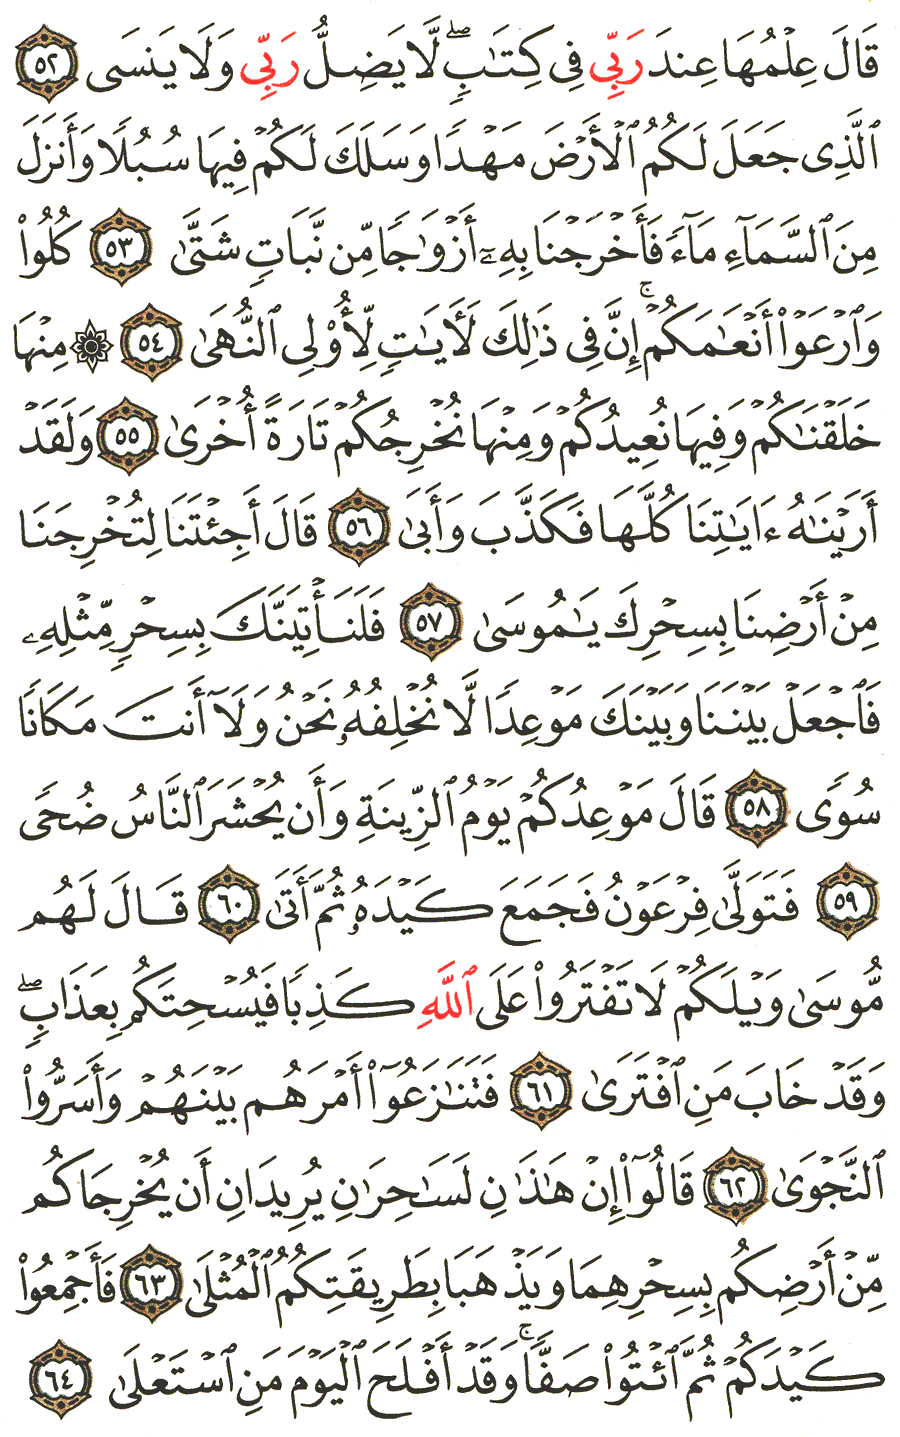 الصفحة 315 من القرآن الكريم